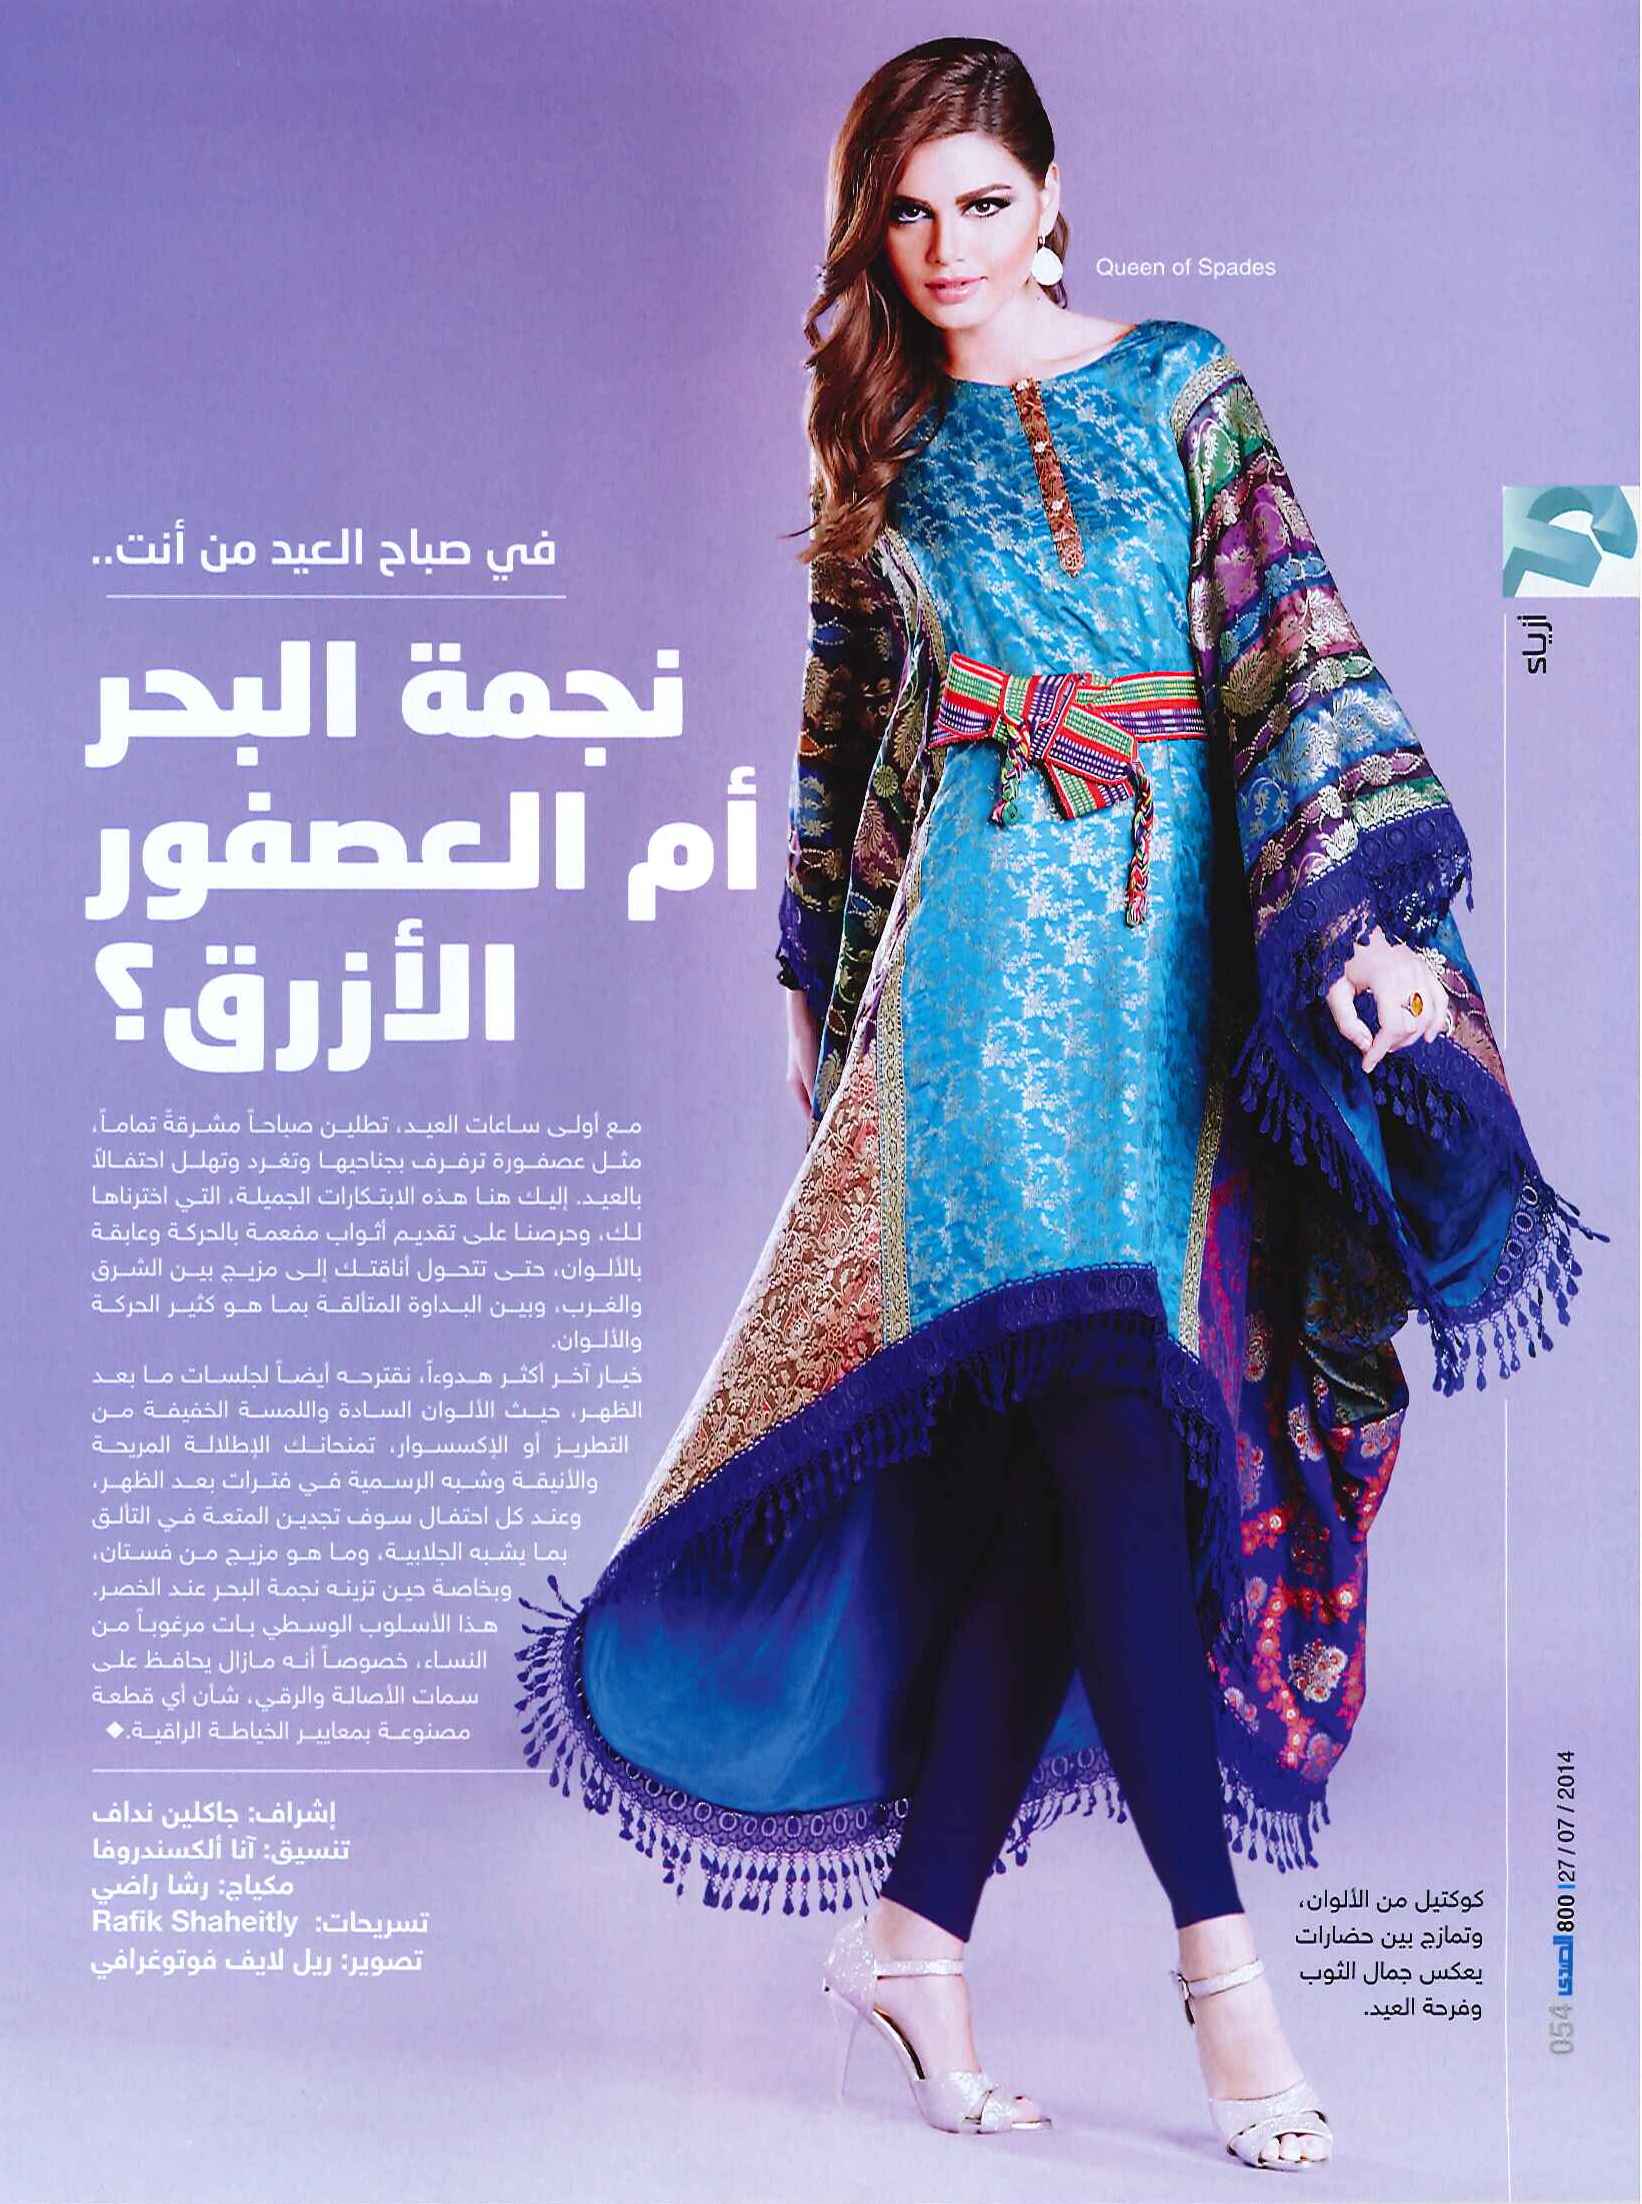 FLC Models & Talents - Catalogue Shoots - Al Sada - Arianna 2